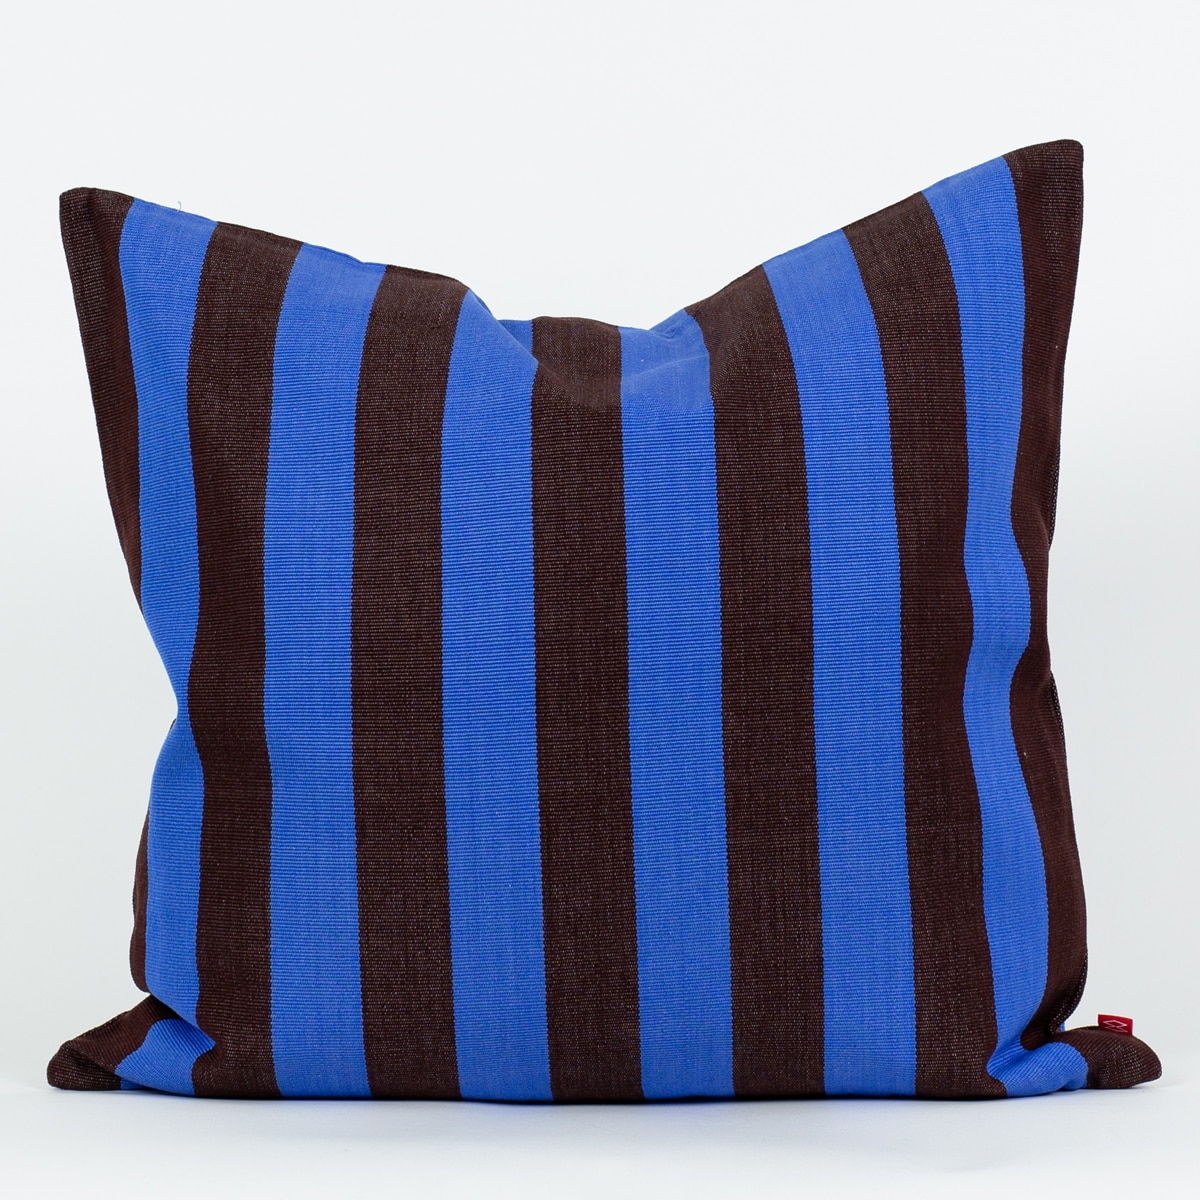 EMANUELA Cushion cover 50x50, brown/blue